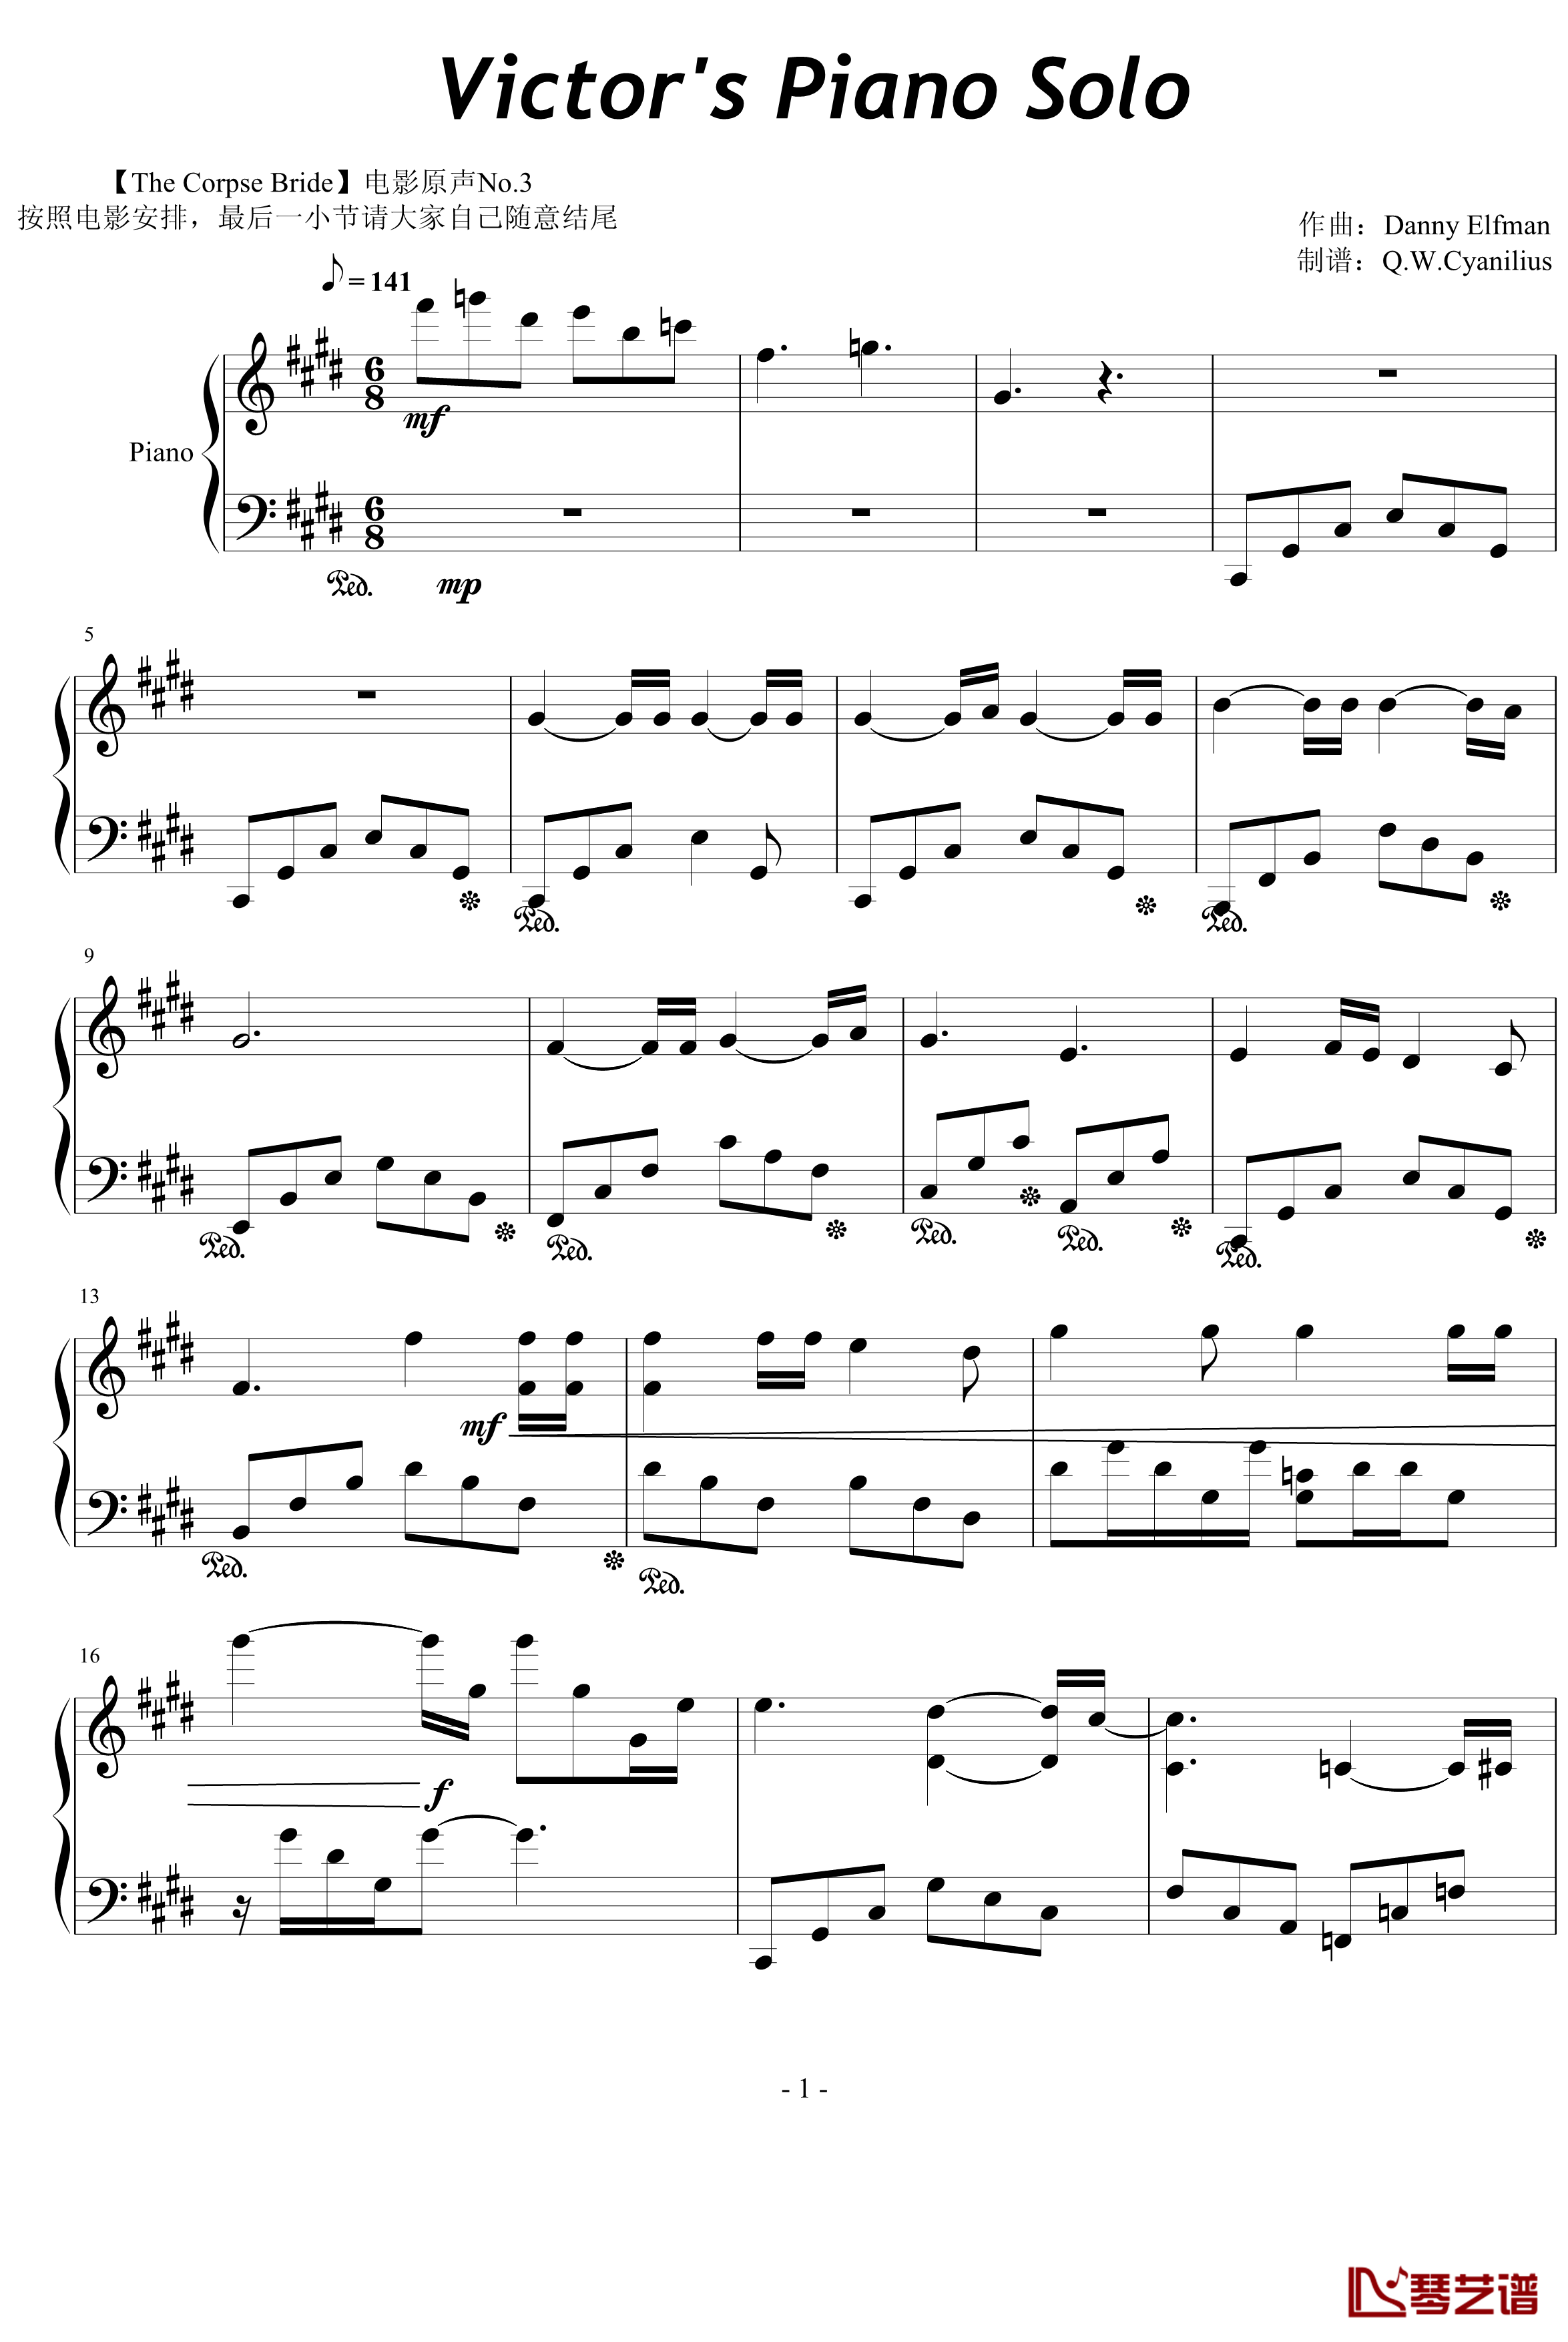 僵尸新娘中Victor的独奏钢琴谱-Danny Elfman-钢琴1